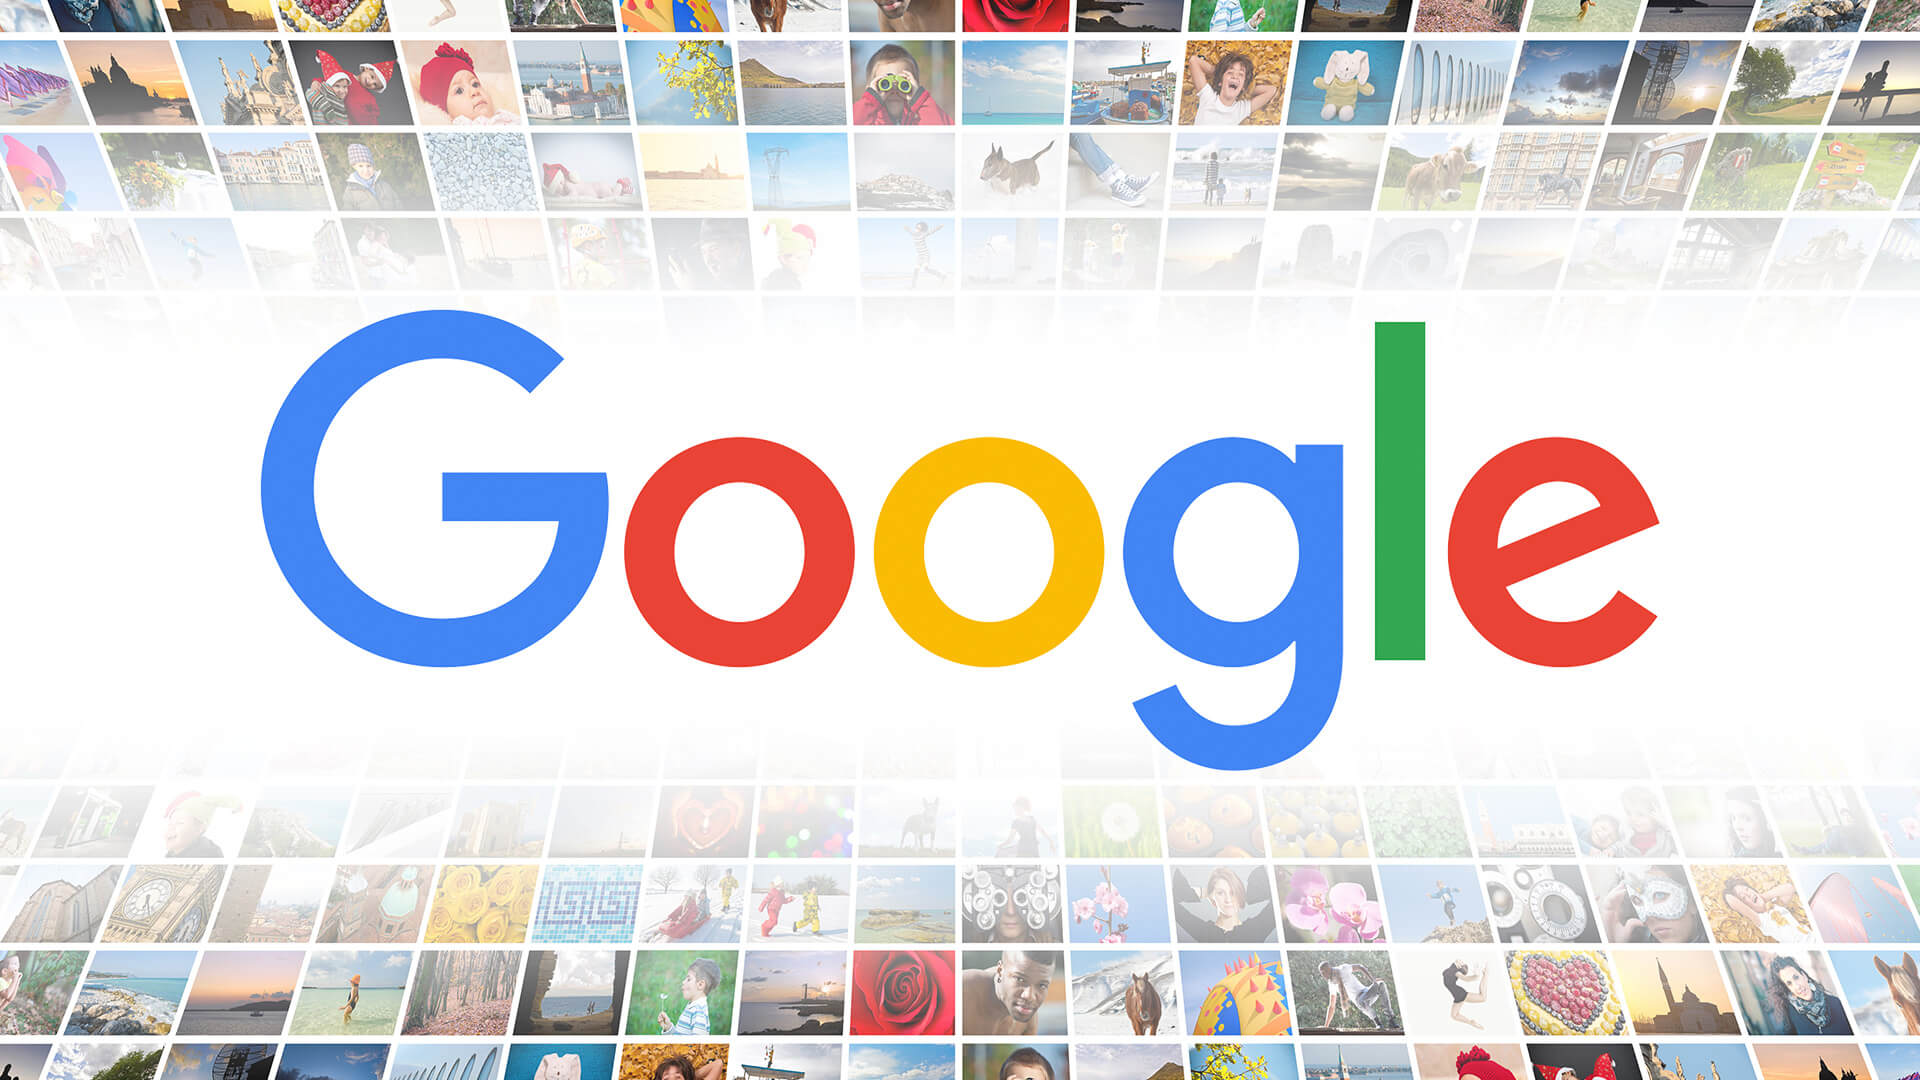 No se arrastran los anuncios: las imágenes etiquetadas como 'Producto' en Google Imágenes forman parte del marcado de nuevas insignias